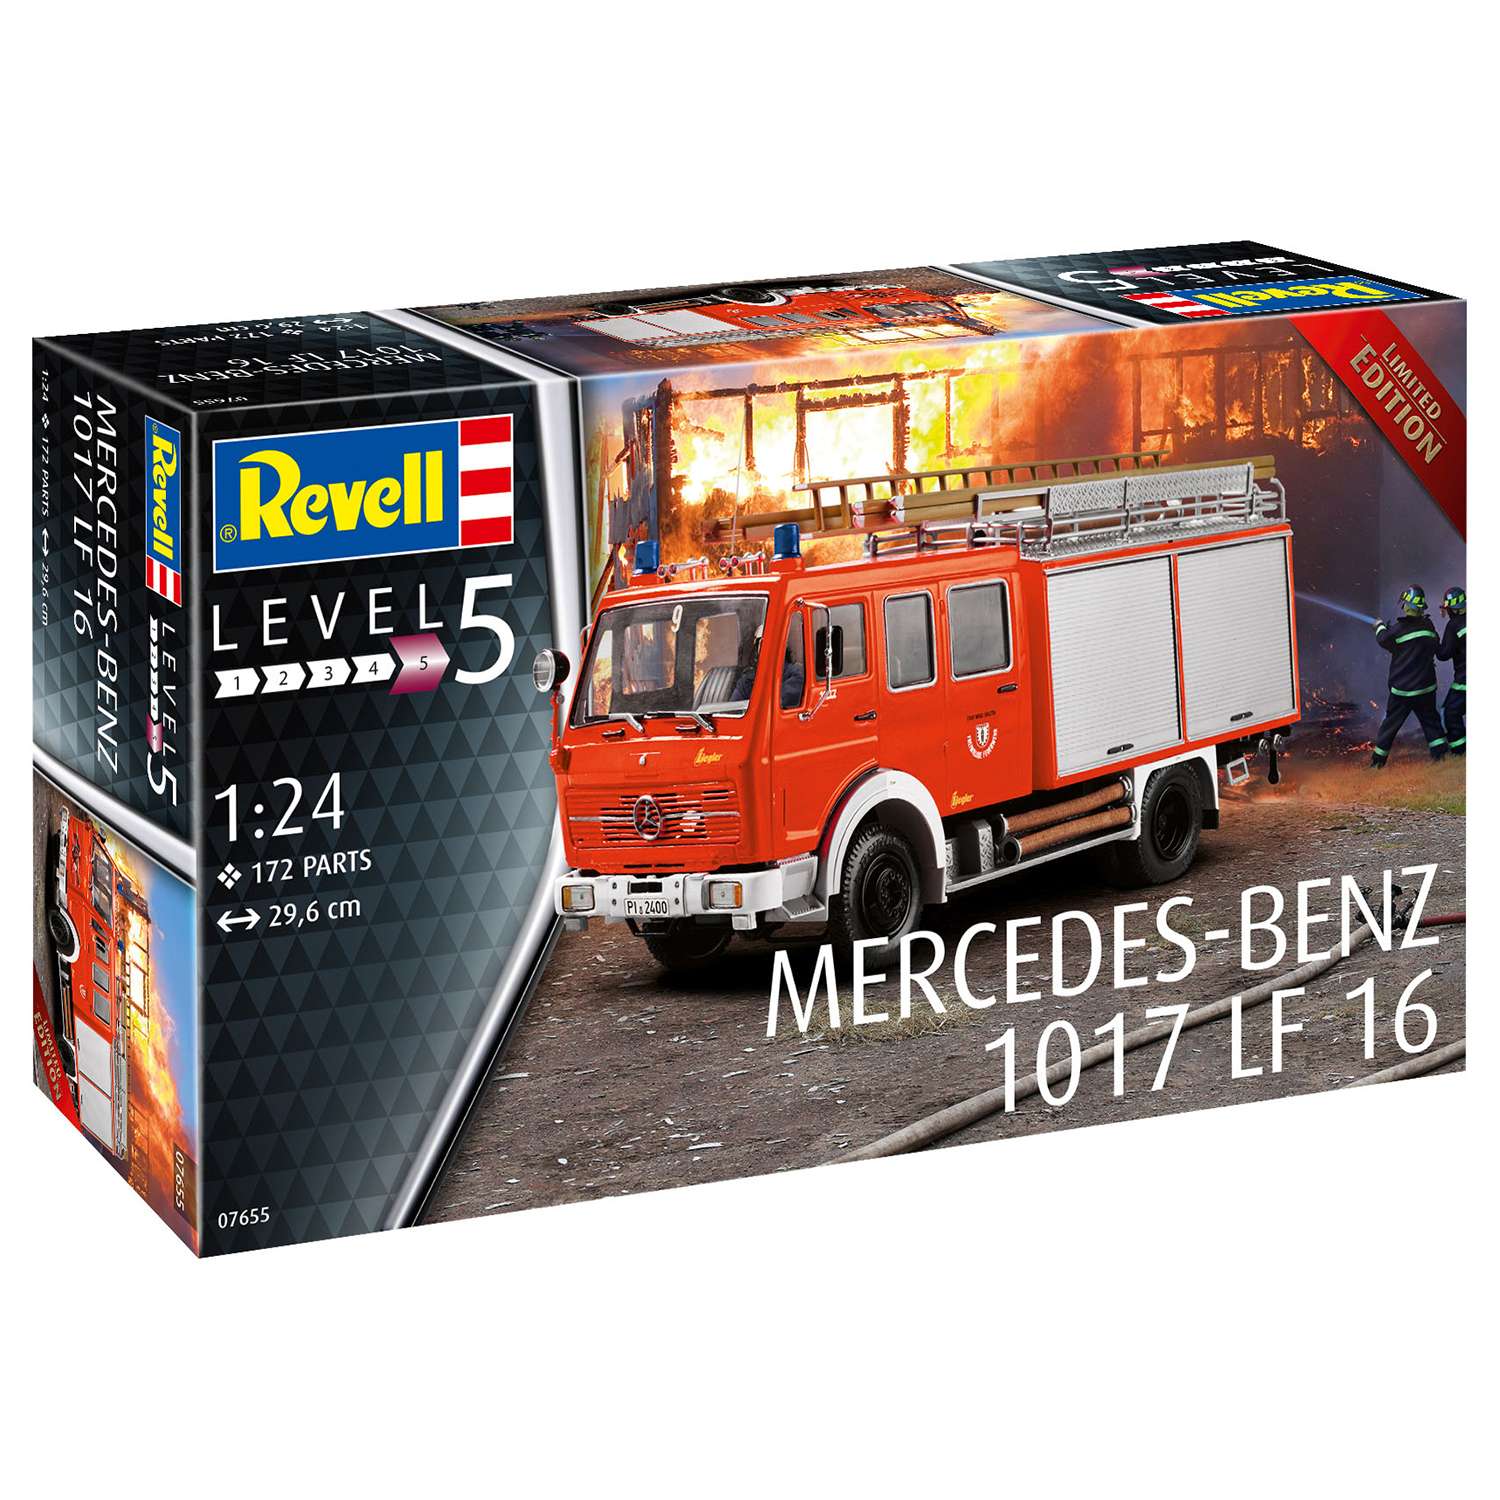 Сборная модель Revell Пожарный автомобиль Mercedes-Benz 1017 LF 16 07655 - фото 4